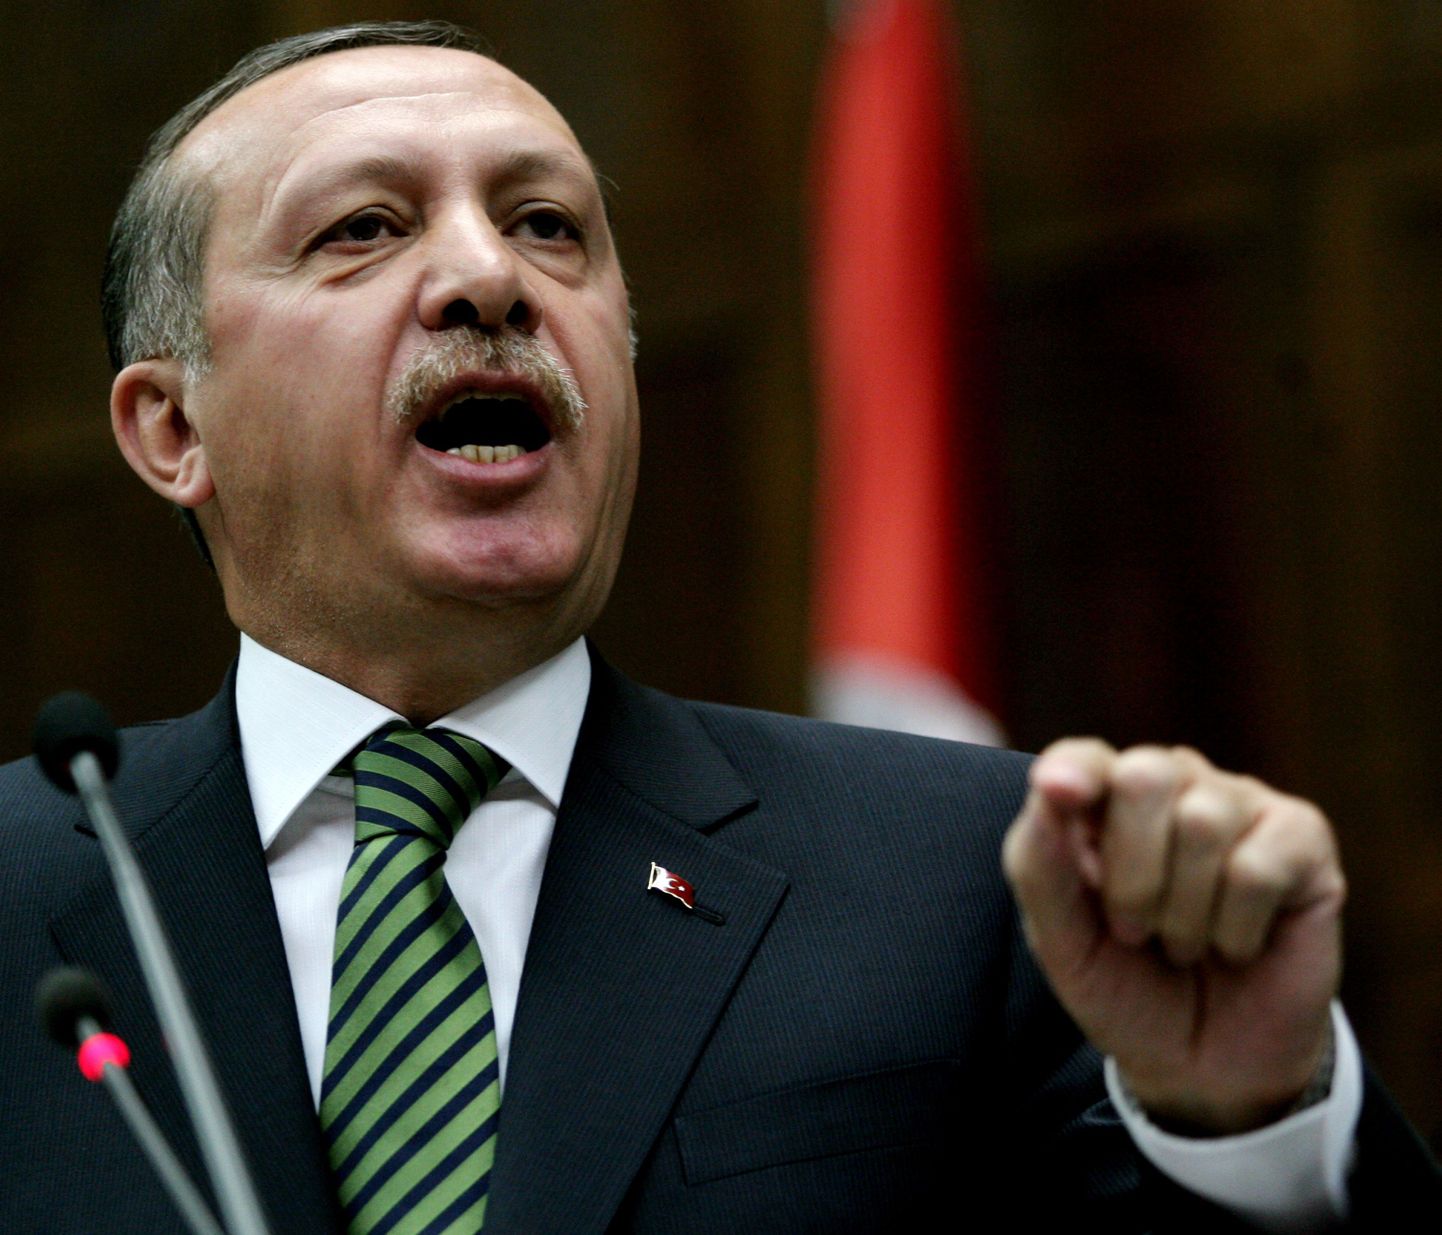 Премьер-министр Турции Тайип Эрдоган